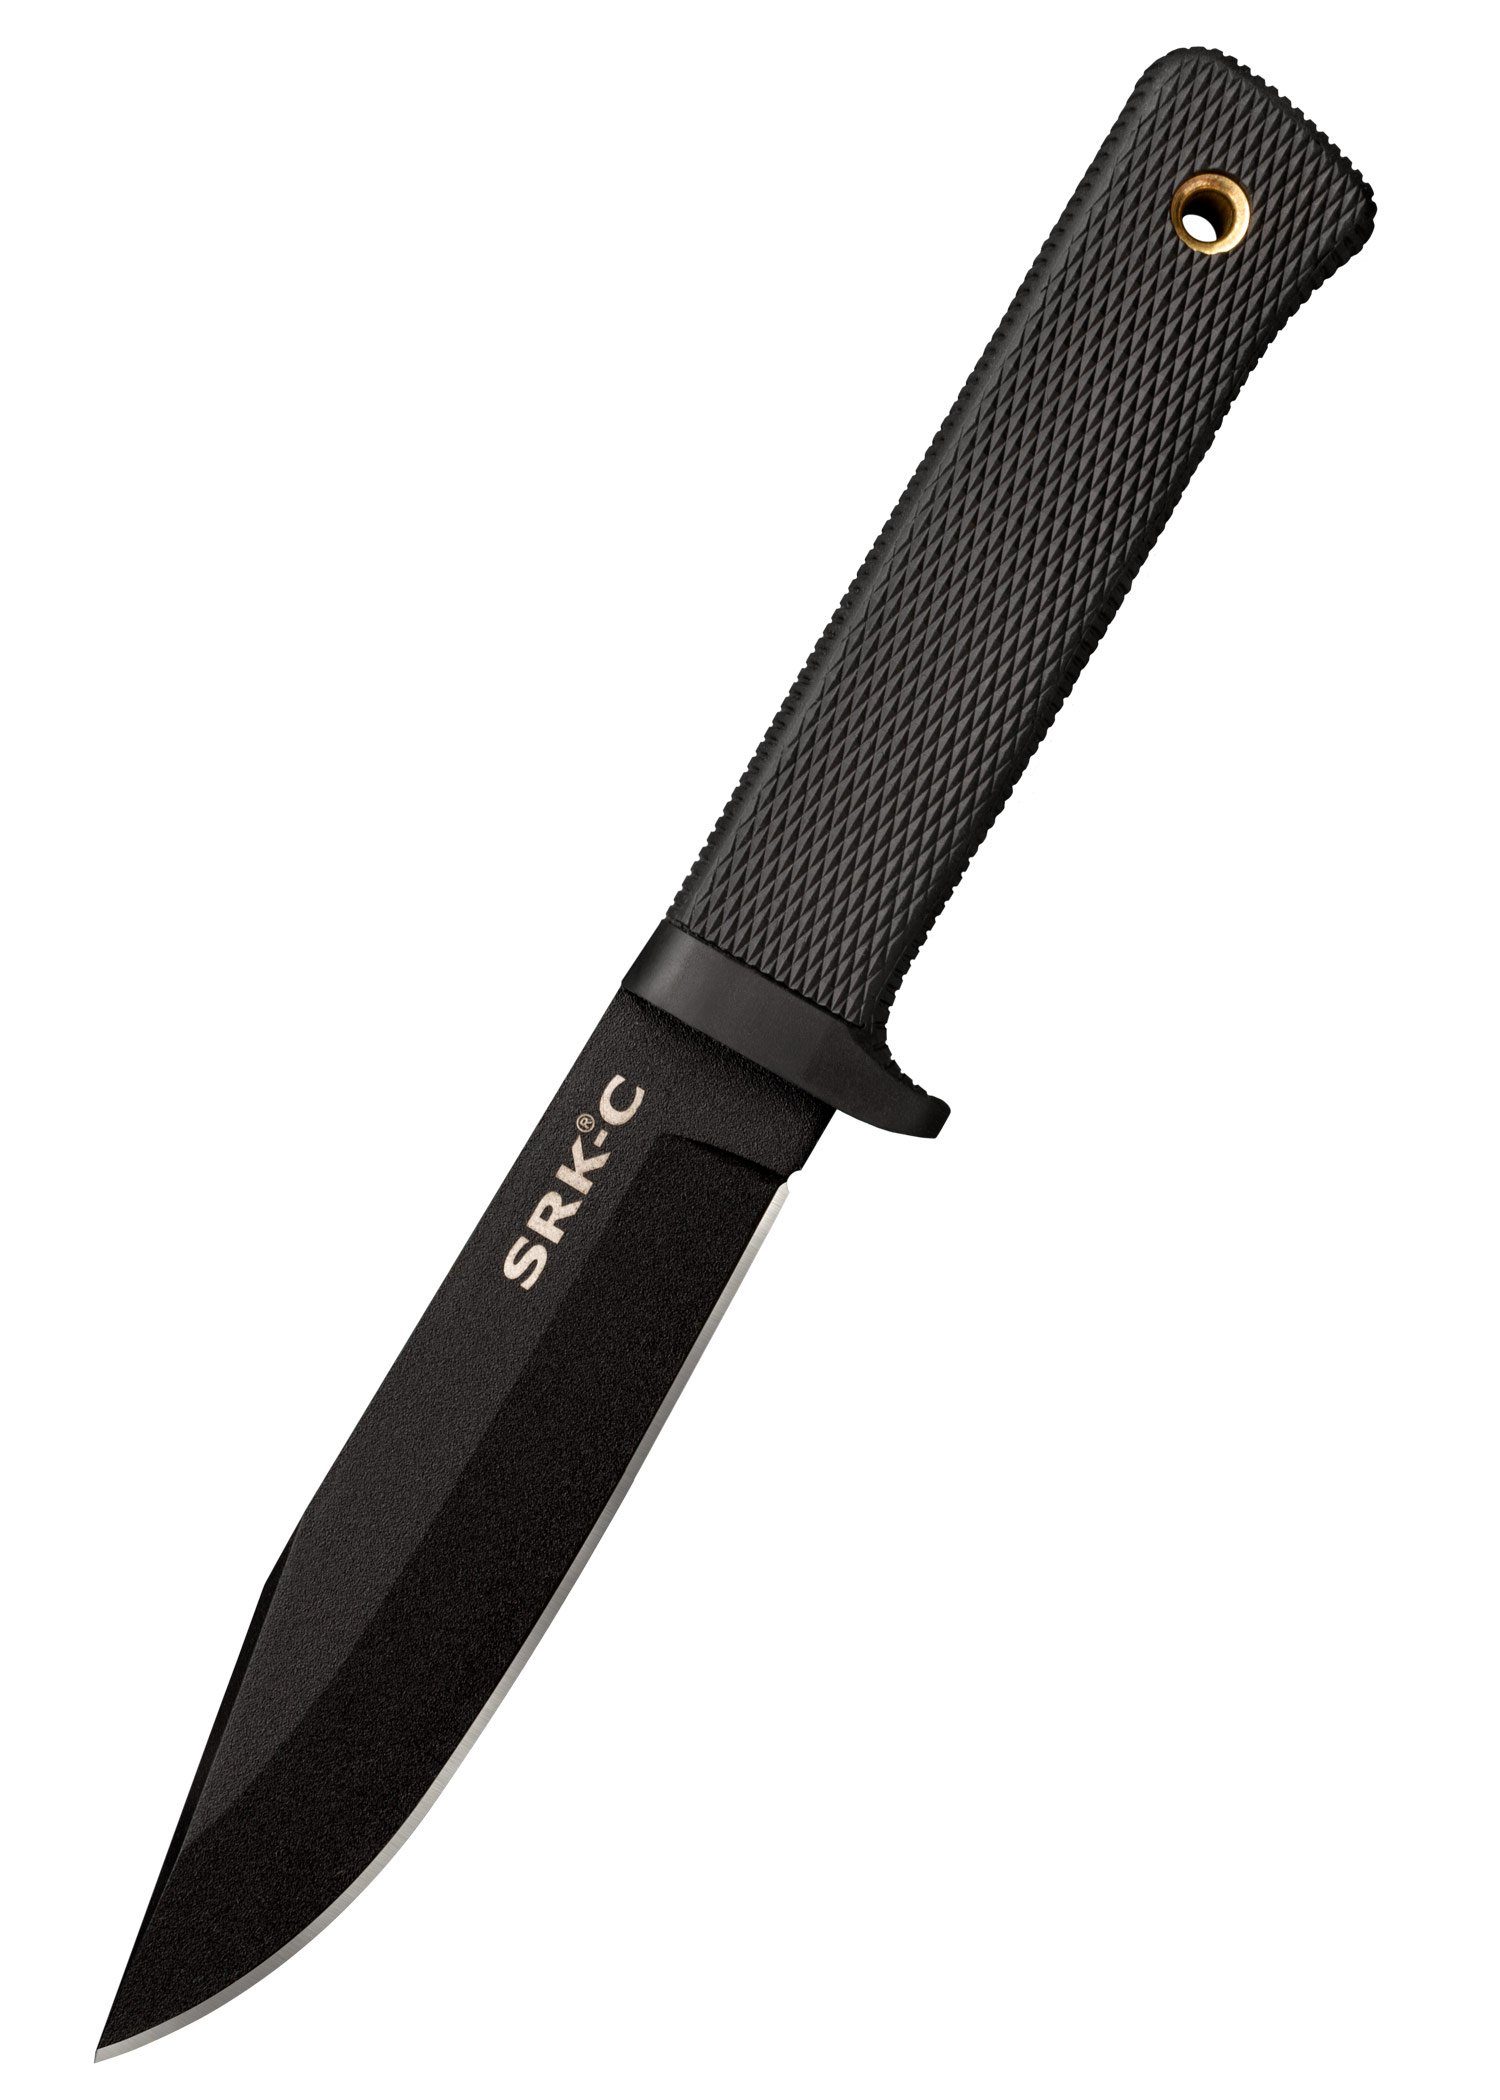 Cold Steel Survival Knife Cold Steel Rettungsmesser SRK Compact feststehendes Messer mit Scheide